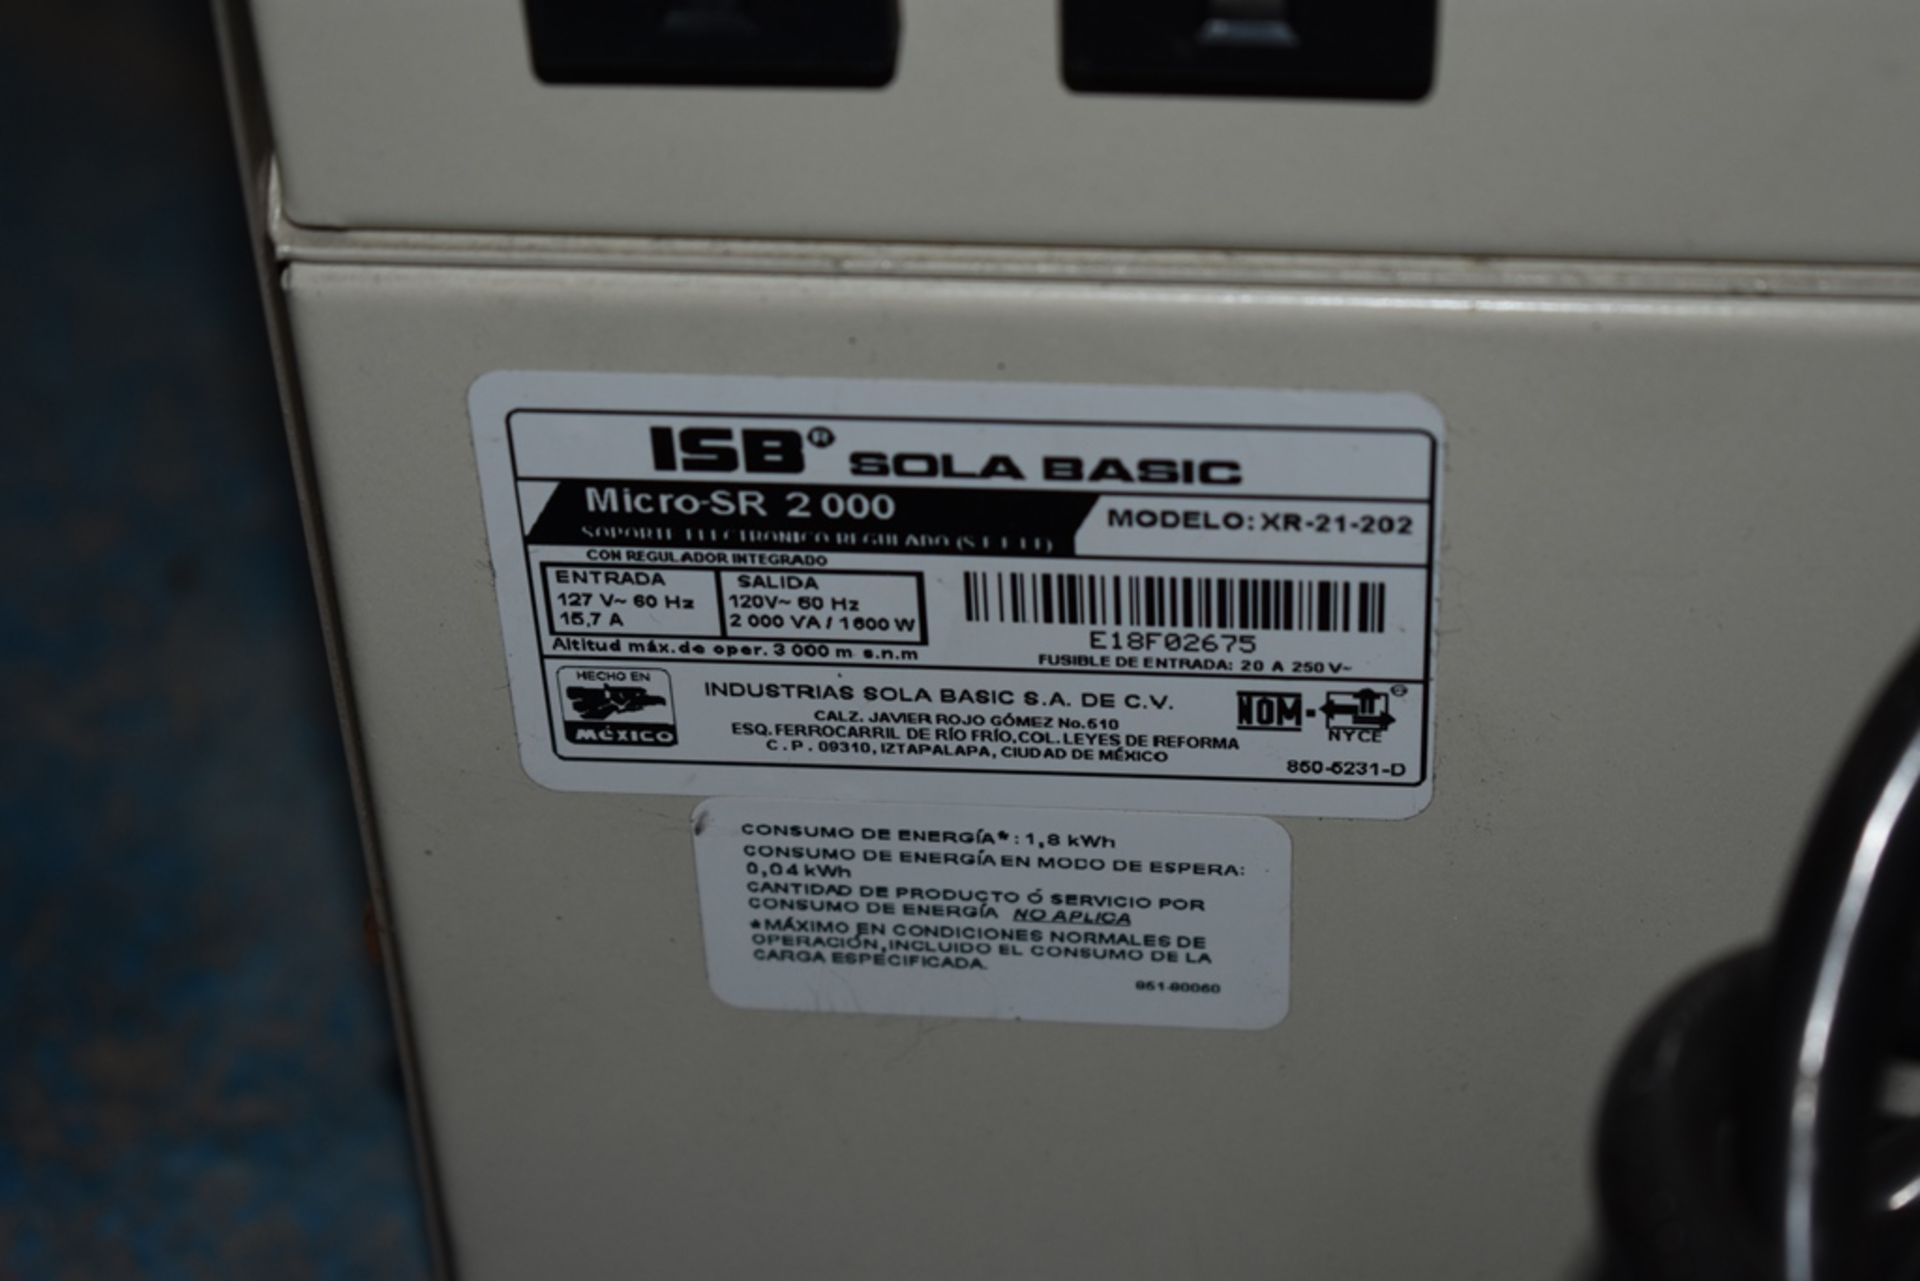 Dos reguladores de voltaje marca ISB Solabasic, modelo: XR-21-202, Series: E18F02675, E18H01516 - Image 11 of 17